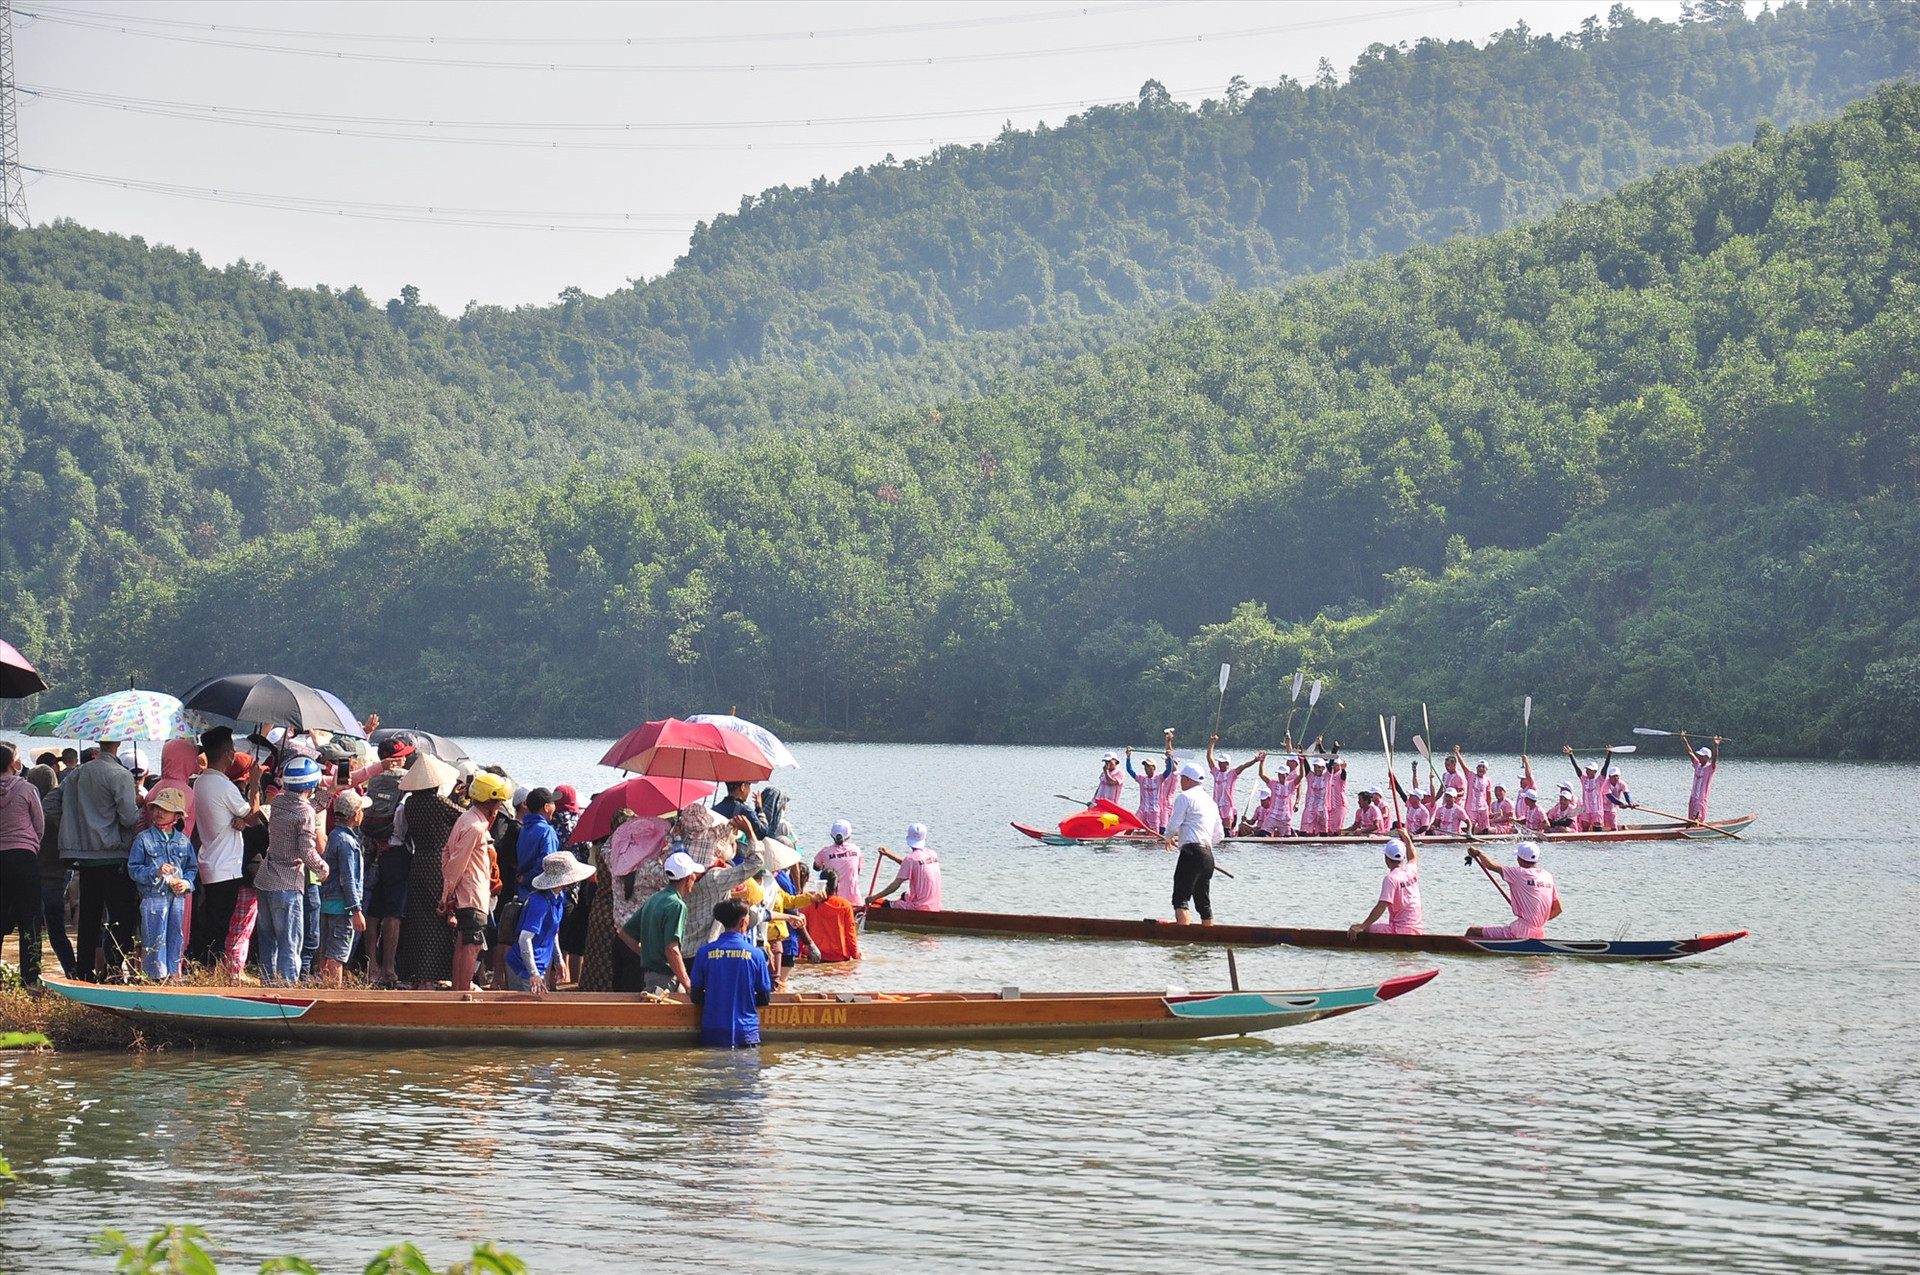 Lần đầu tham gia giải đua thuyền, đội đua thuyền nam xã Quế Lưu - đơn vị chủ nhà đã giành được giải nhất ở chặng đầu tiên - giải hòa bình nam. Ảnh: VINH ANH